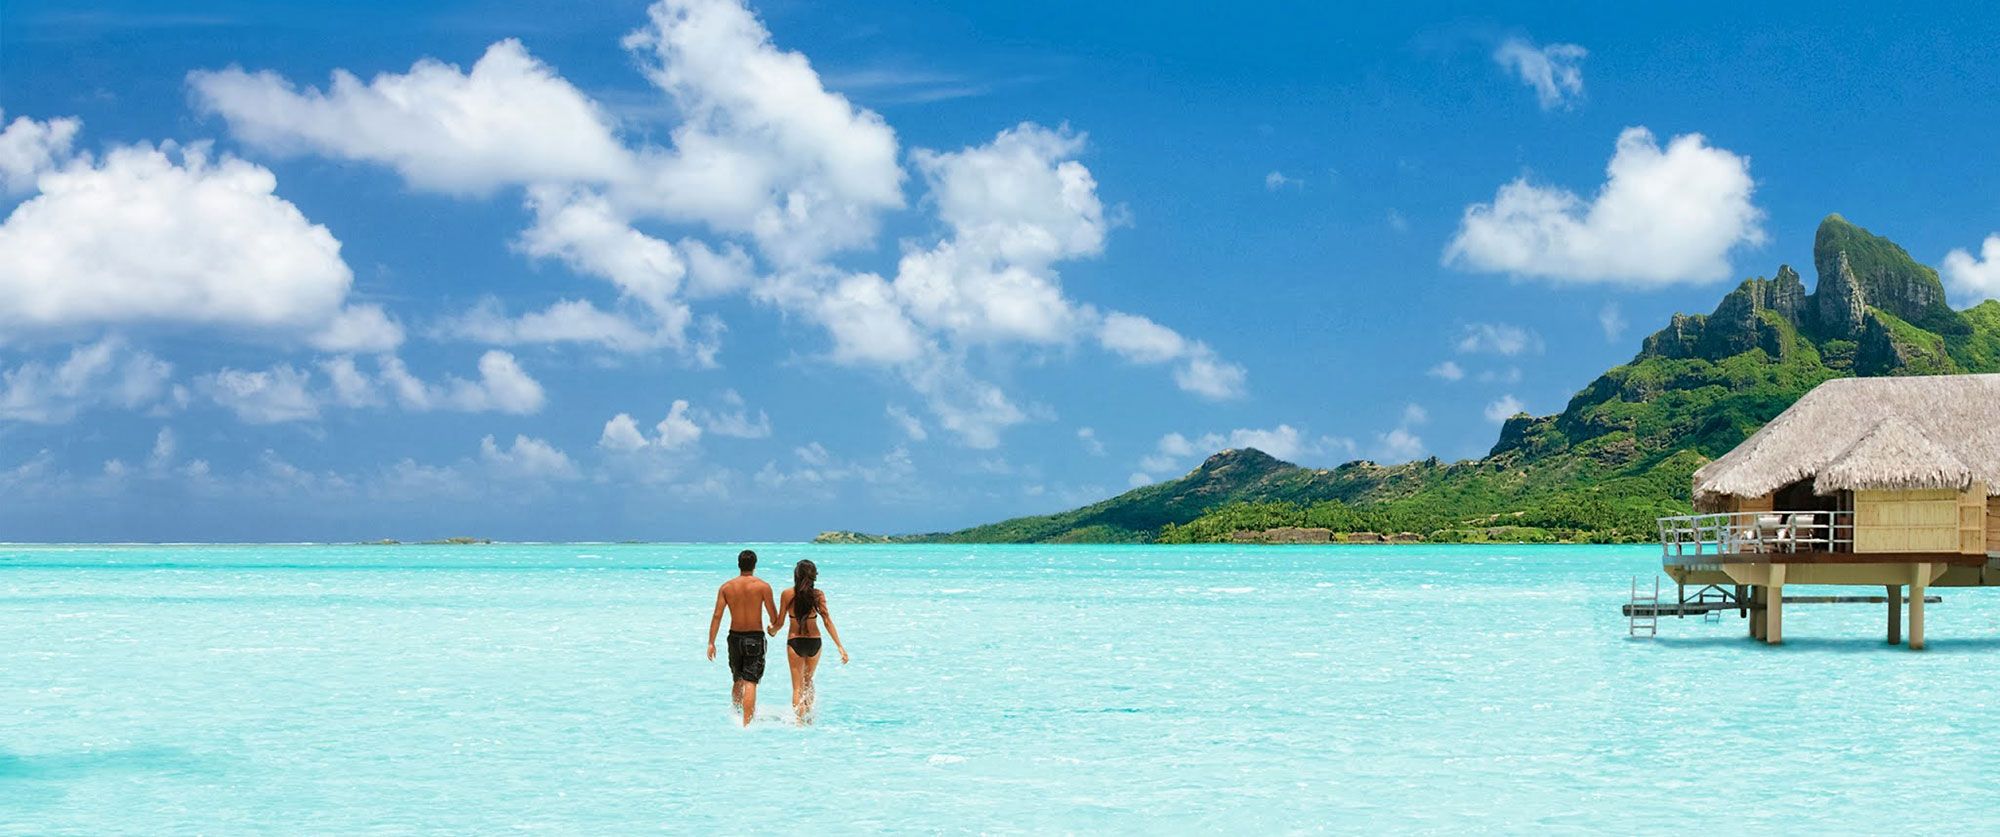 Tahiti Honeymoon Vacation Packages, Overwater Bungalows in Bora Bora